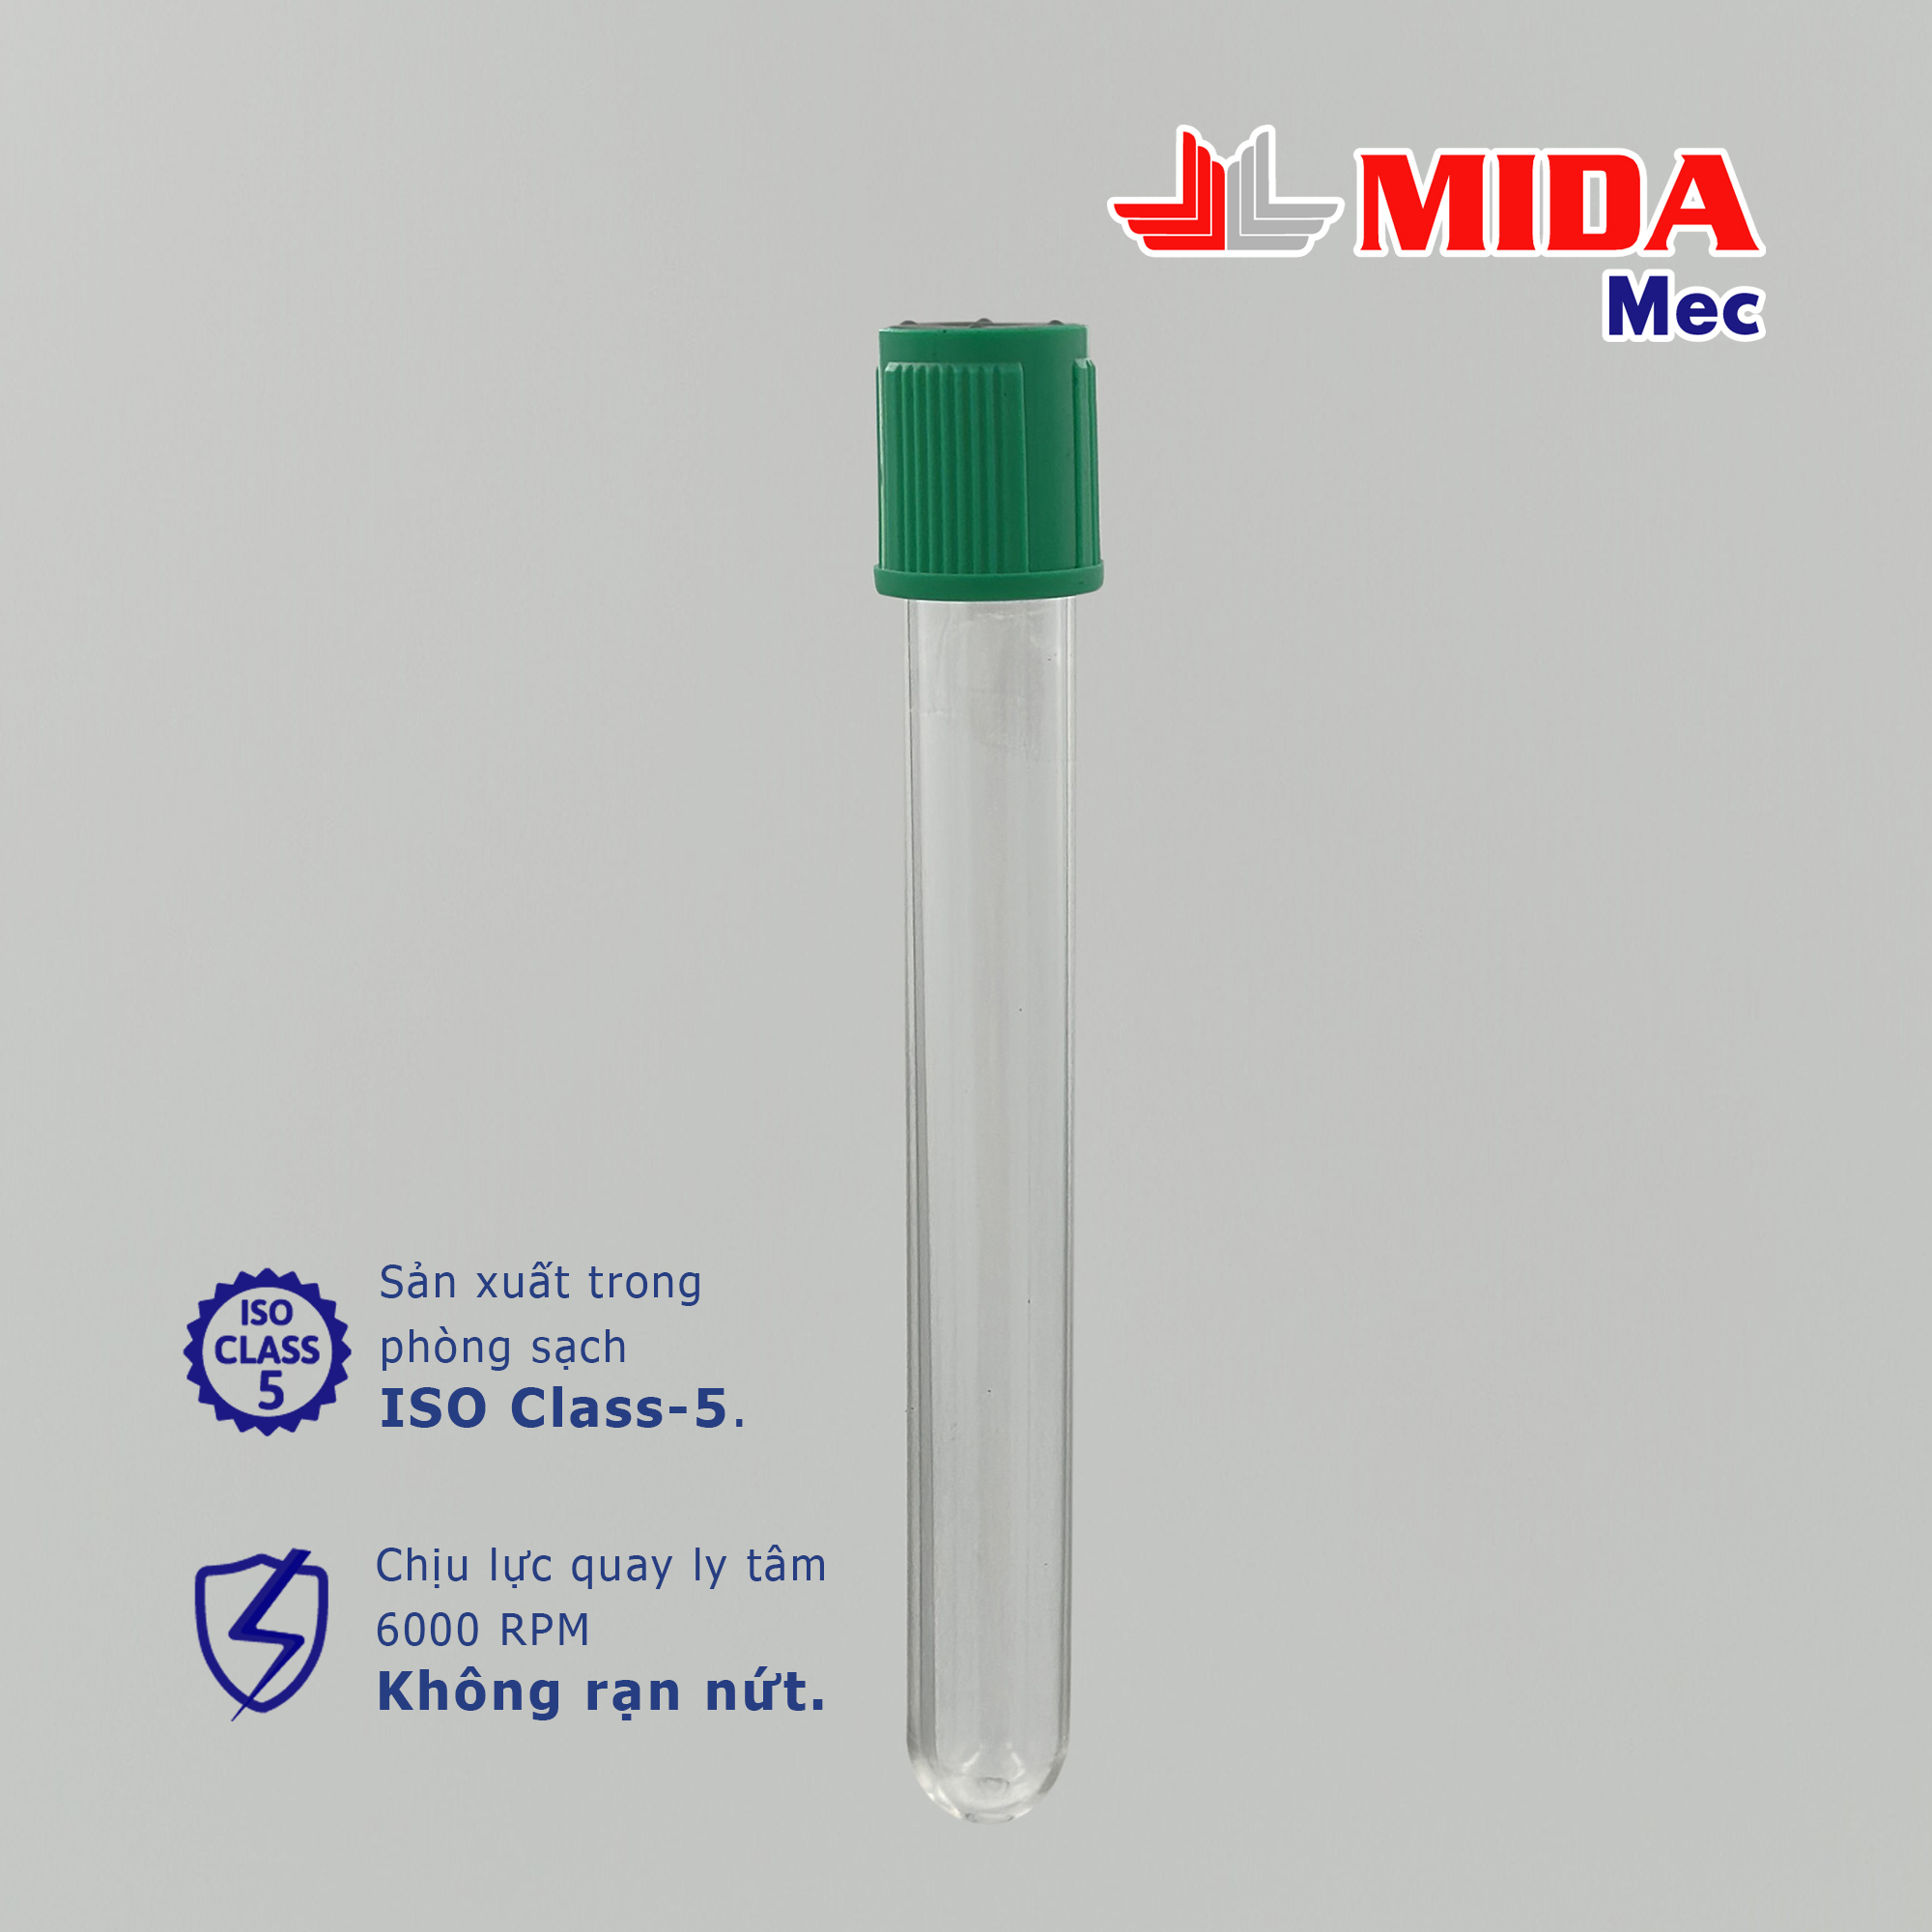 Ống nghiệm nhựa MidaMec 13x100 PS không nắp đóng gói 250 cái/bao